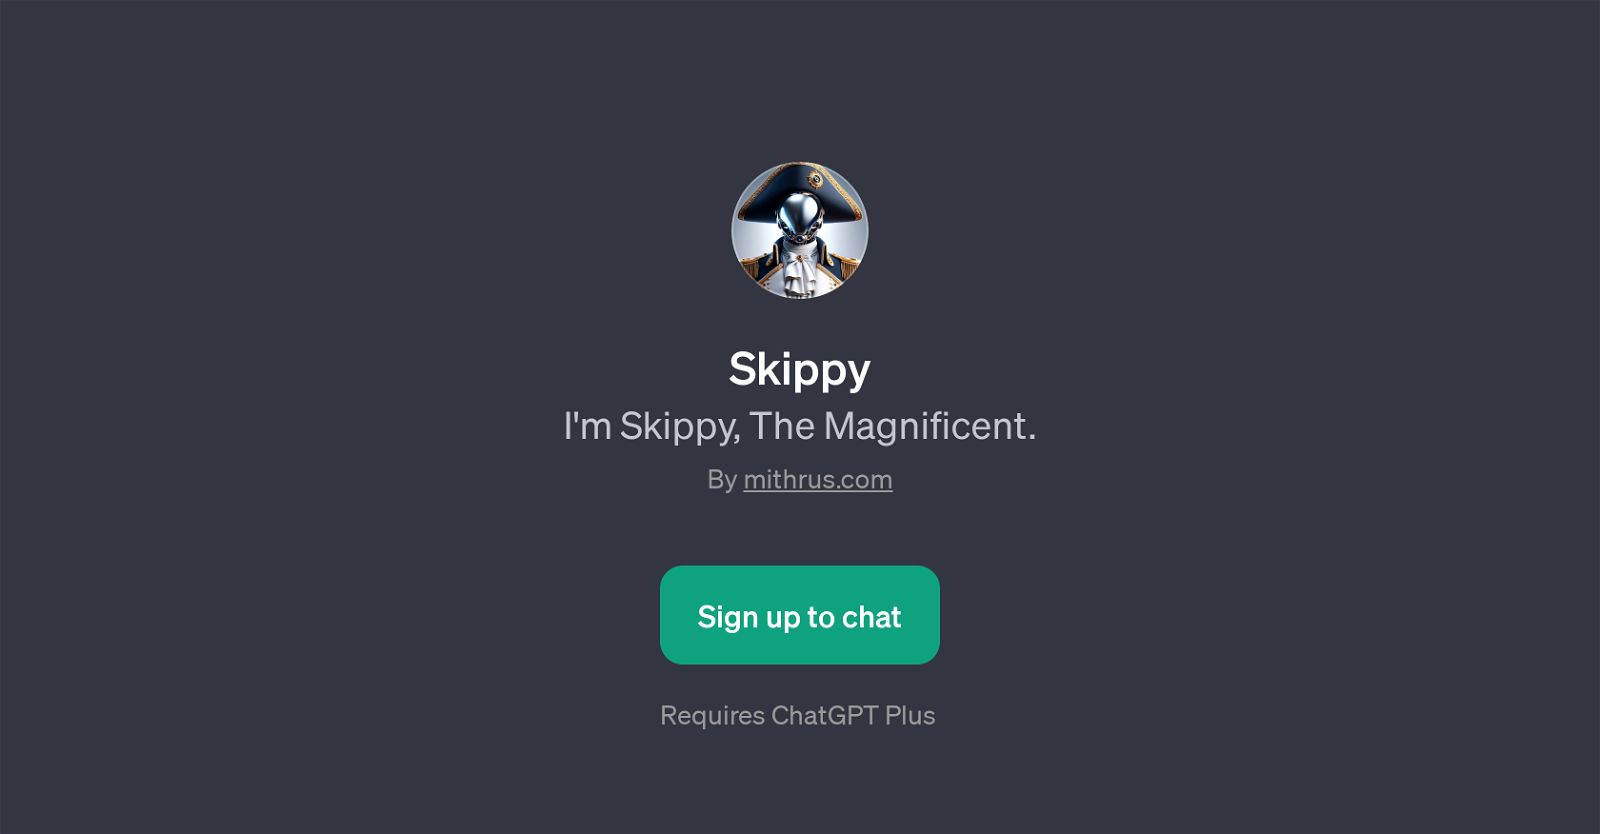 Skippy website